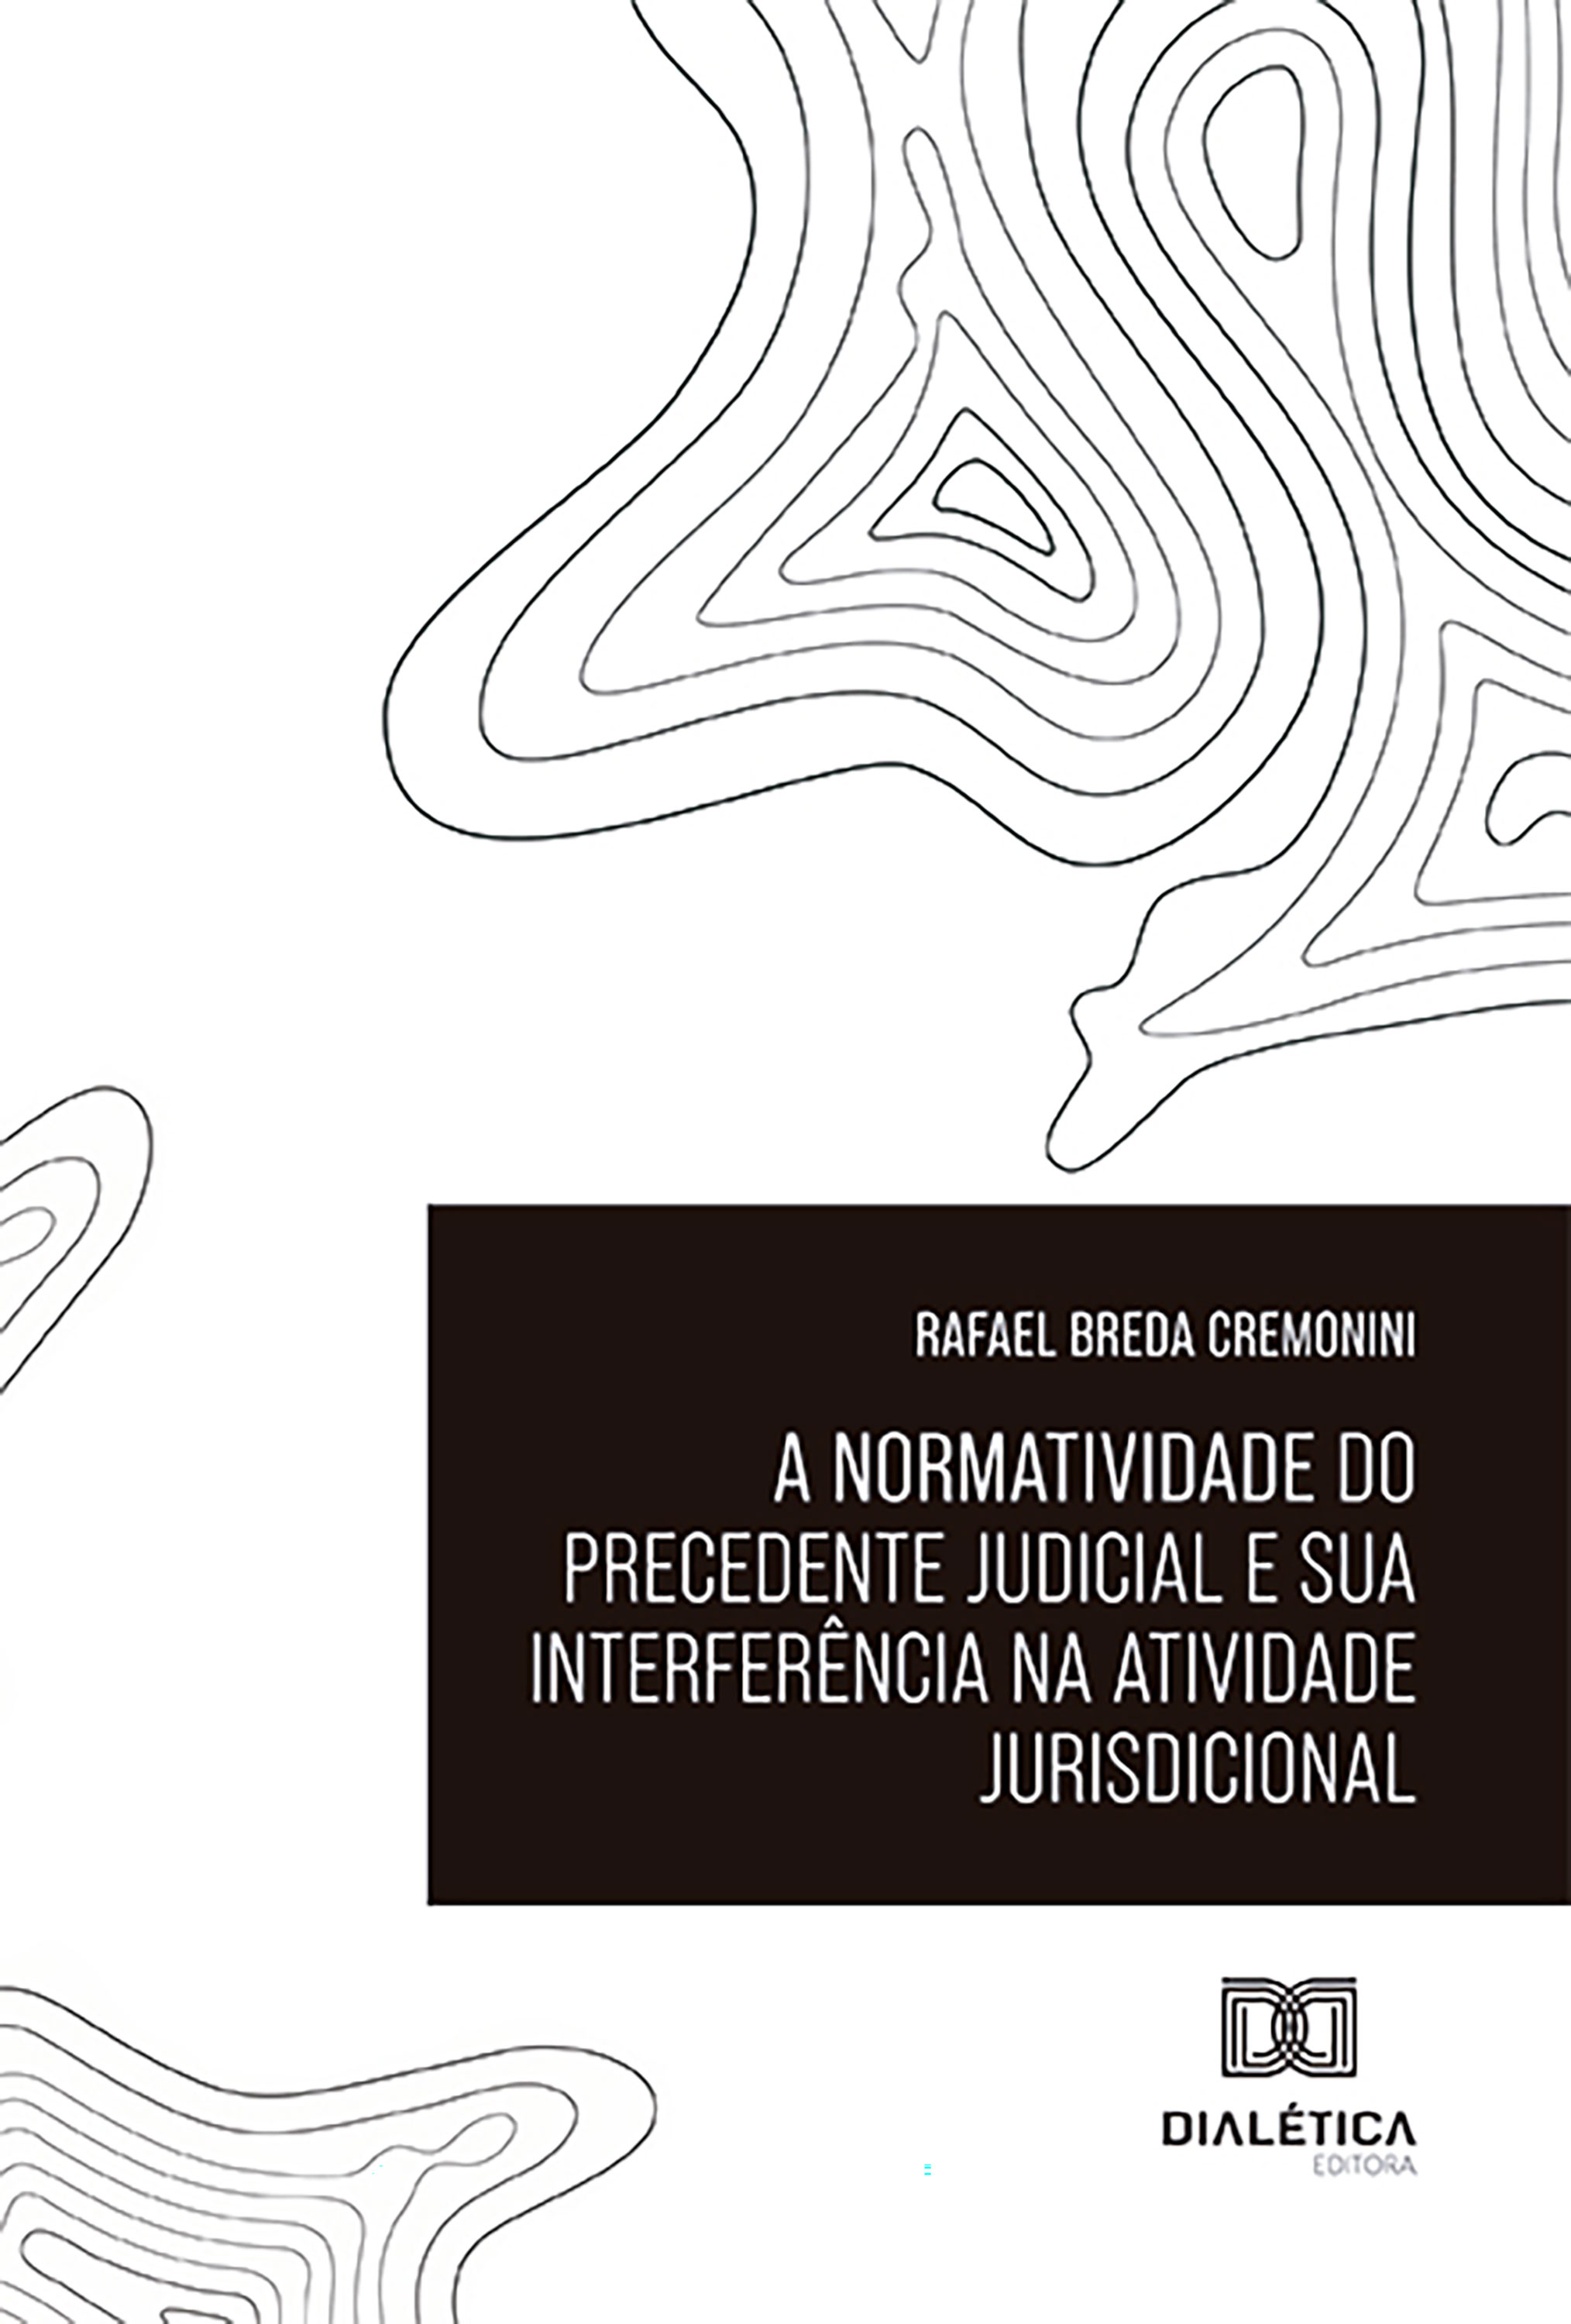 A normatividade do precedente judicial e sua interferência na atividade jurisdicional